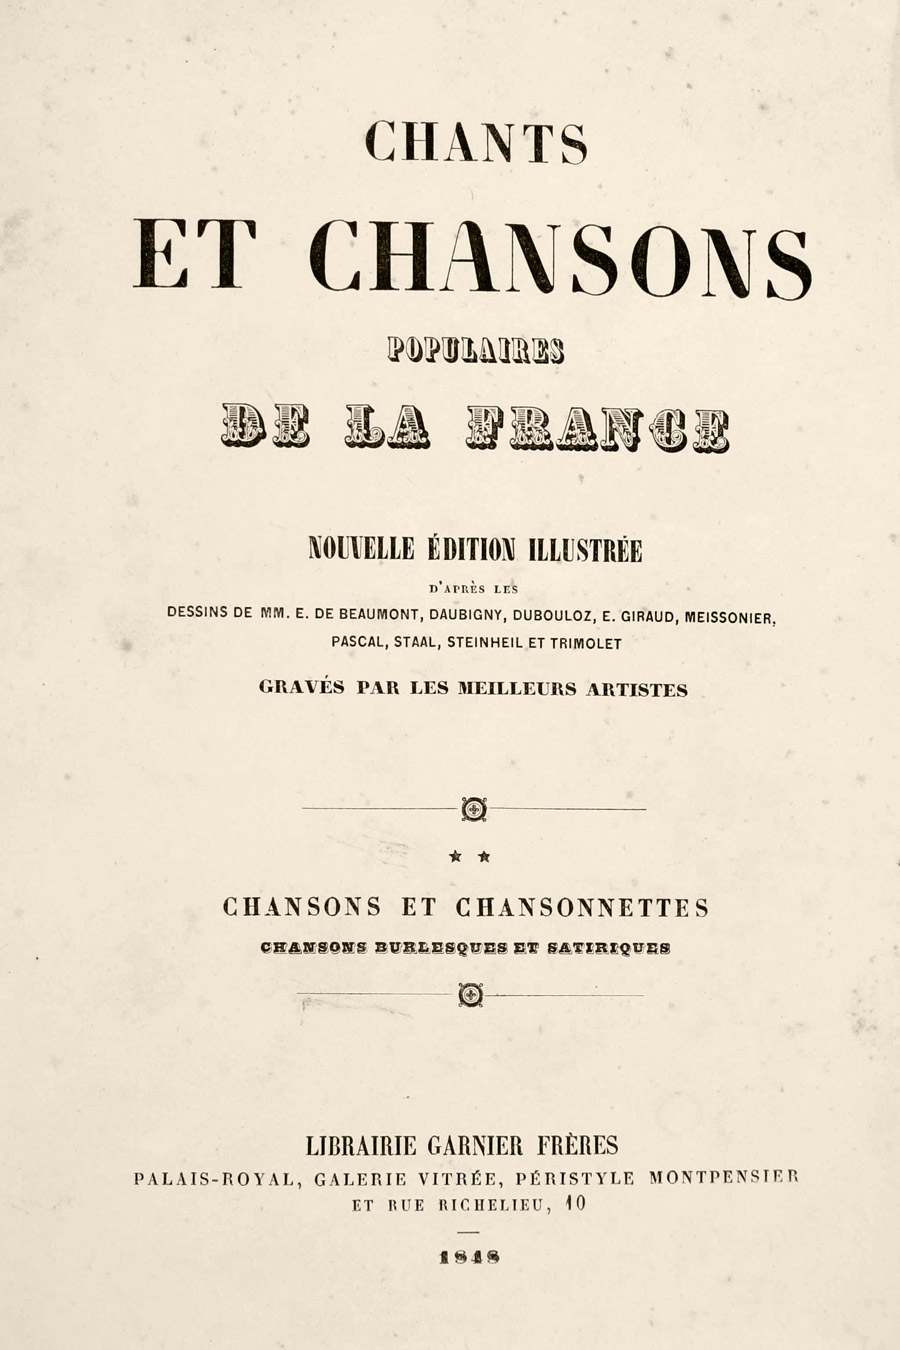 Chants et chansons populaires de la France, 1848